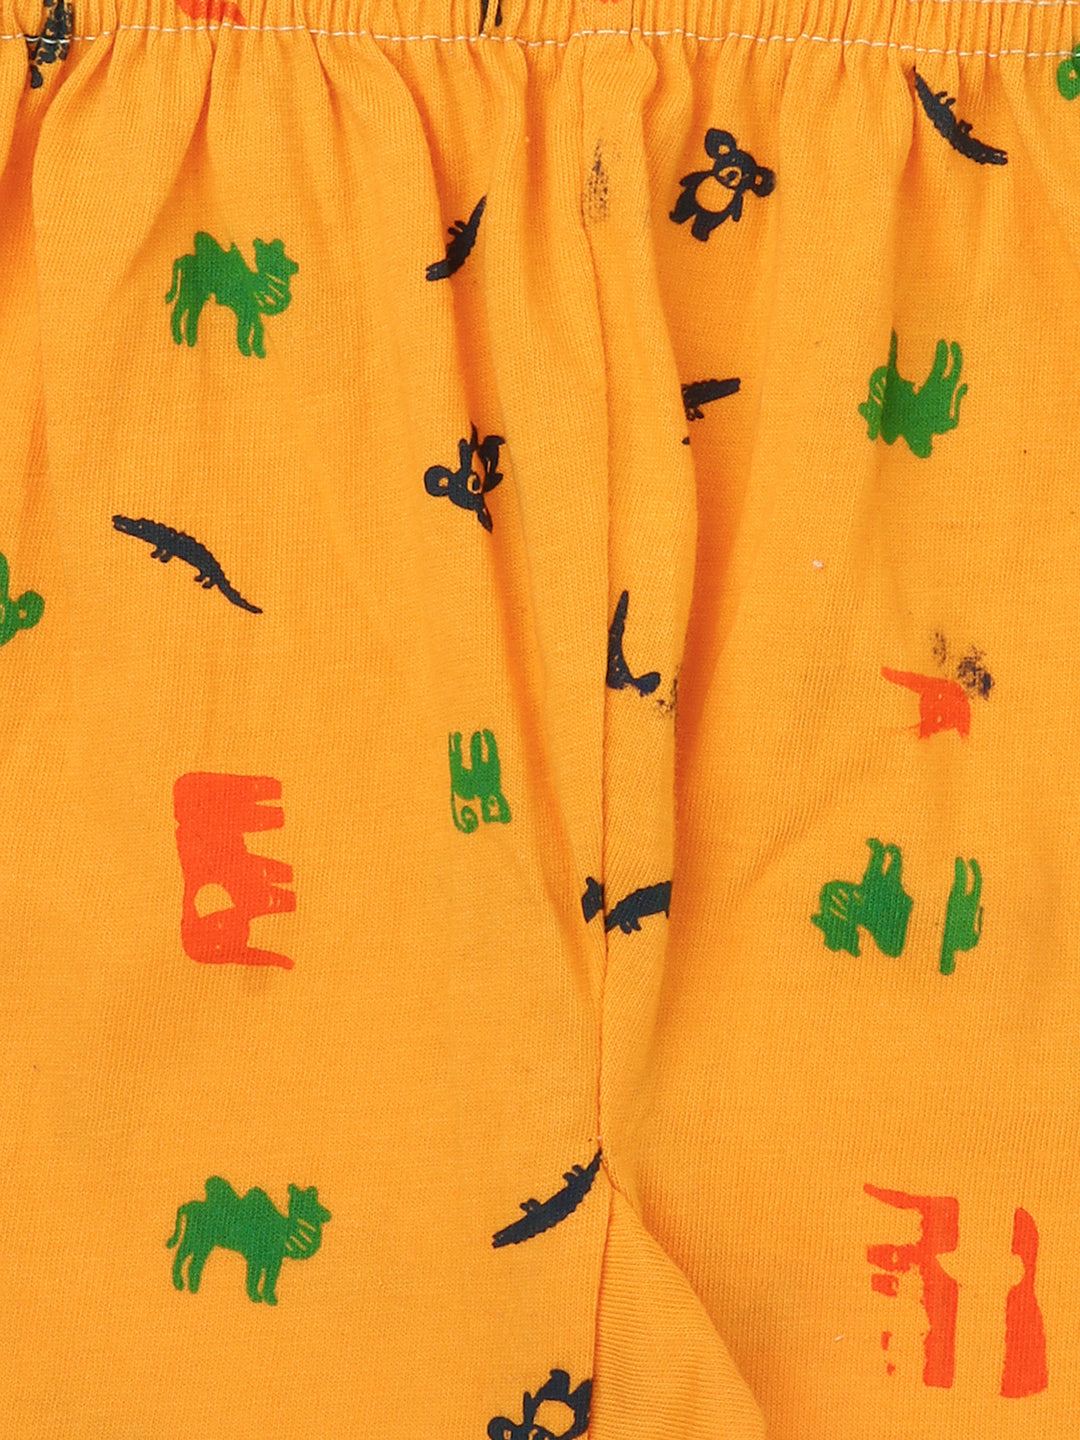 #unisex_kids-cotton-printed-pyjamas-pack-of-5